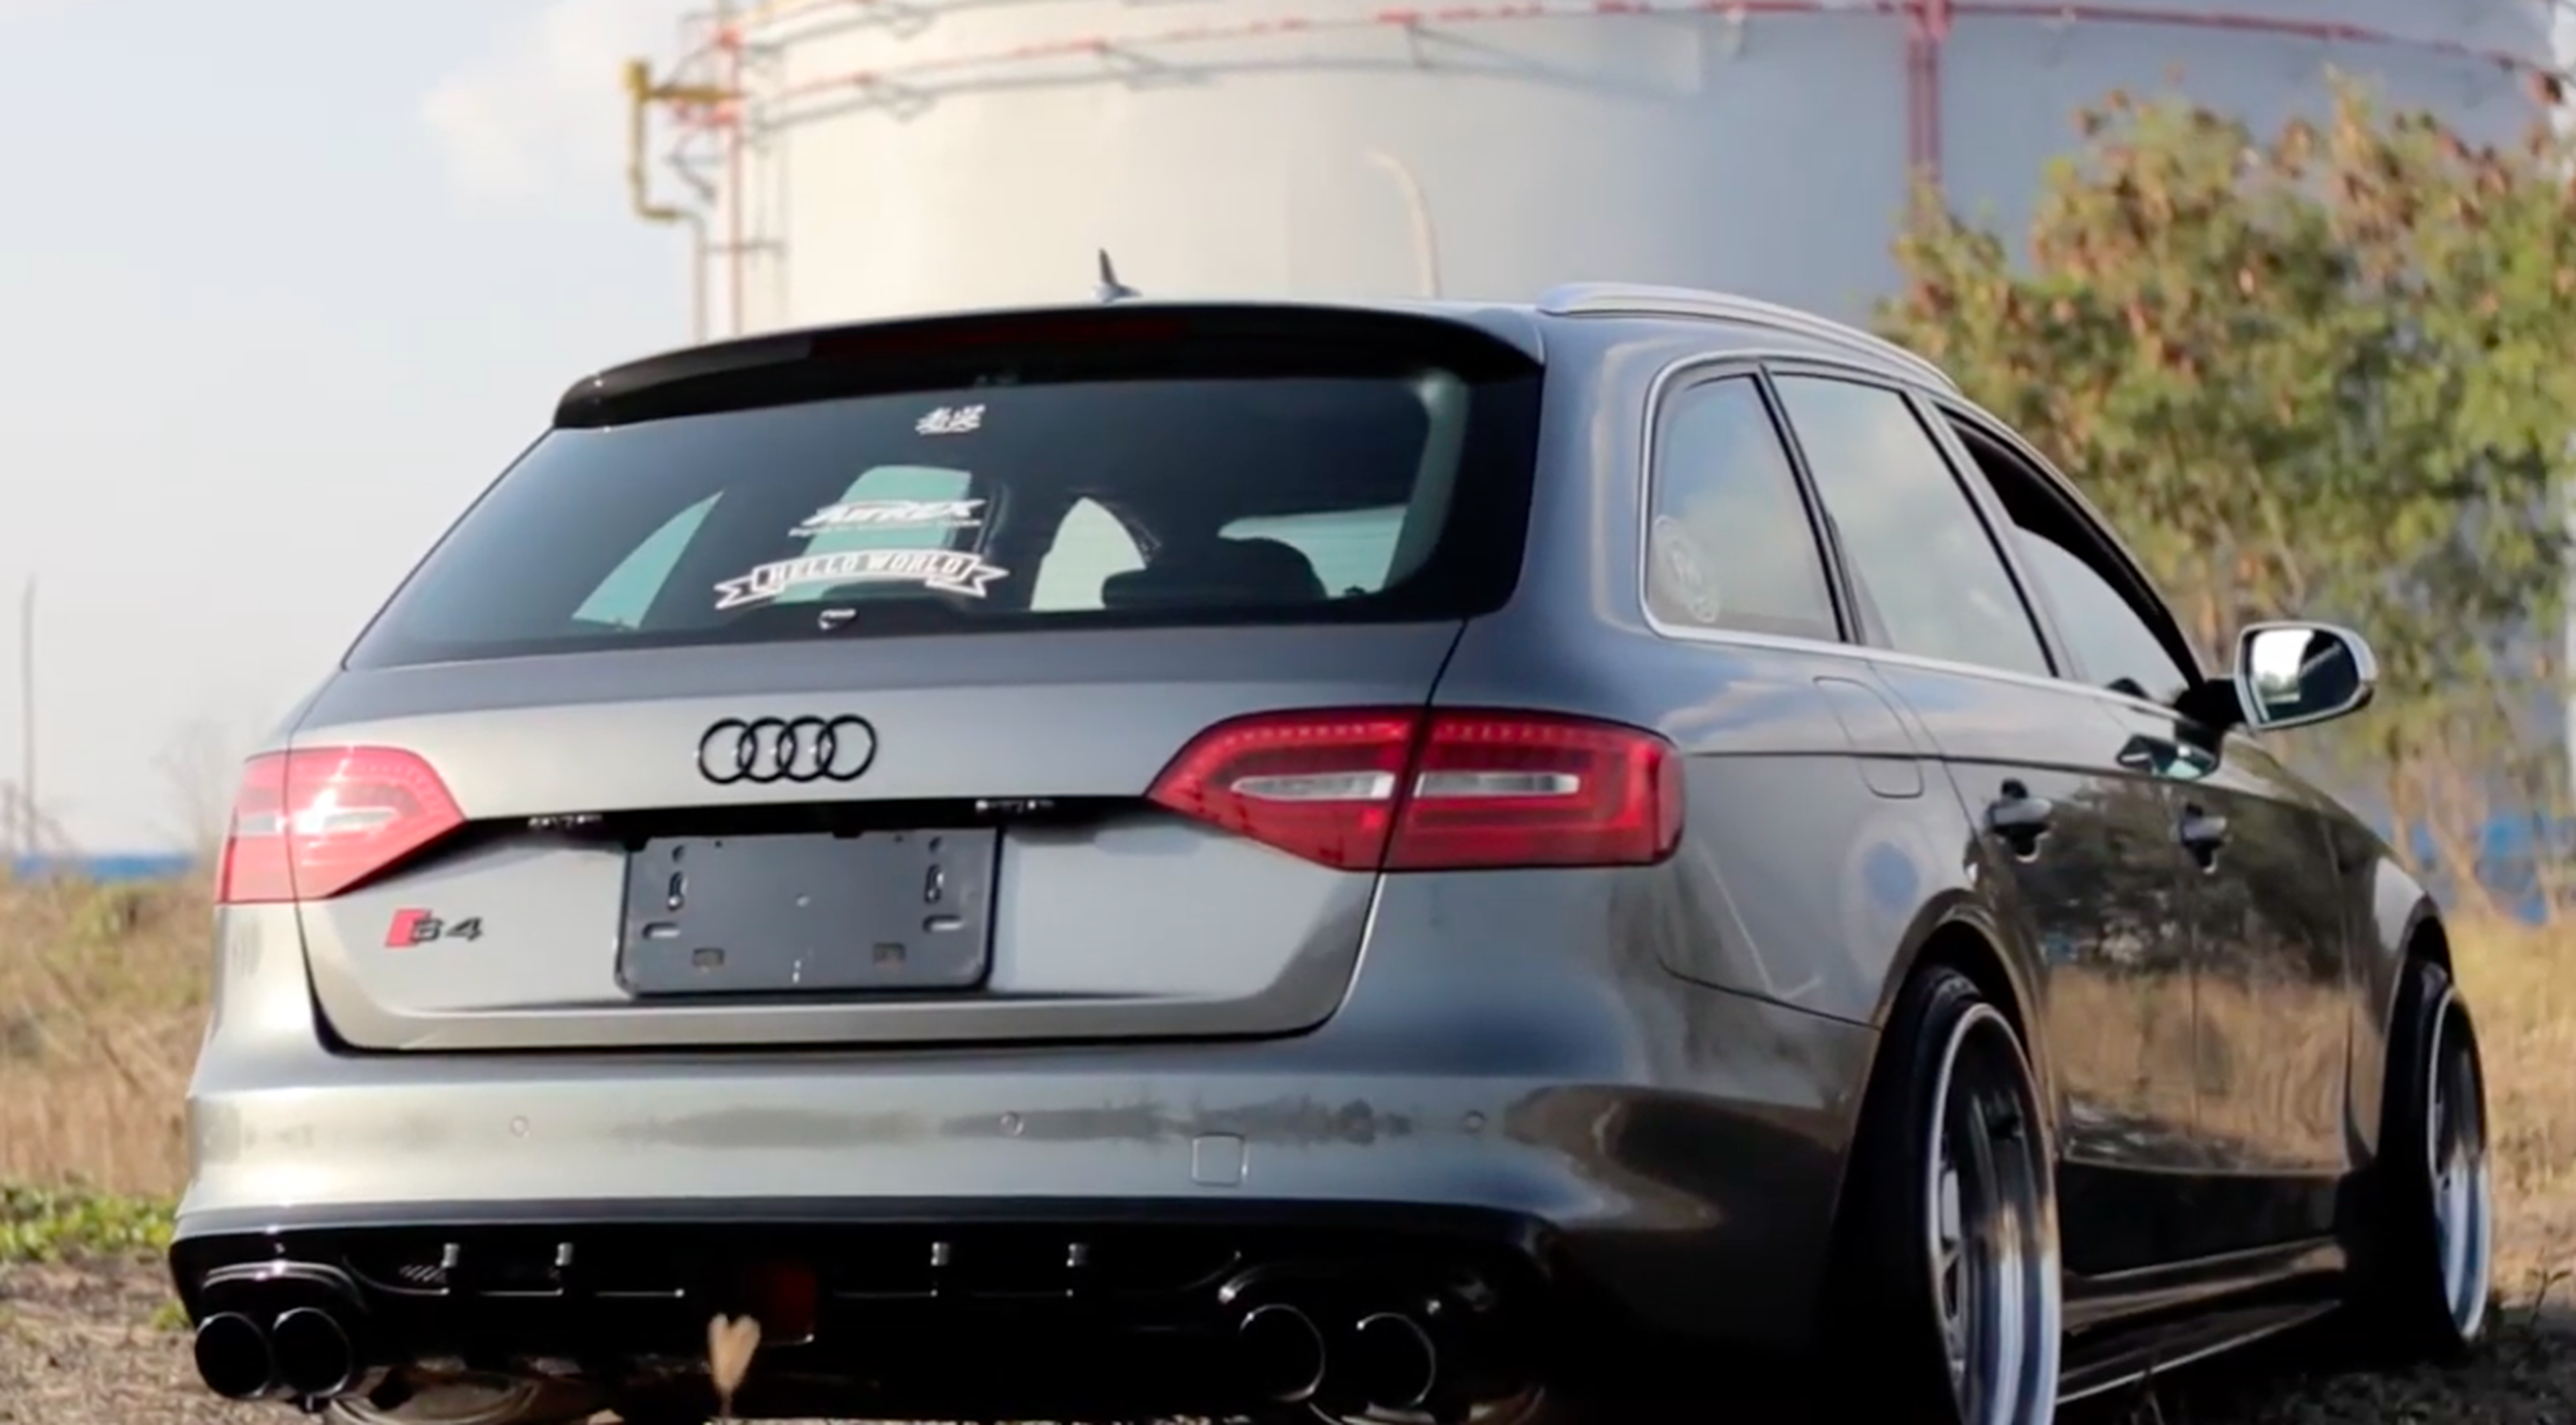 VÍDEO: Los familiares también pueden sonar así de brutos, que se lo digan a este Audi S4 Avant